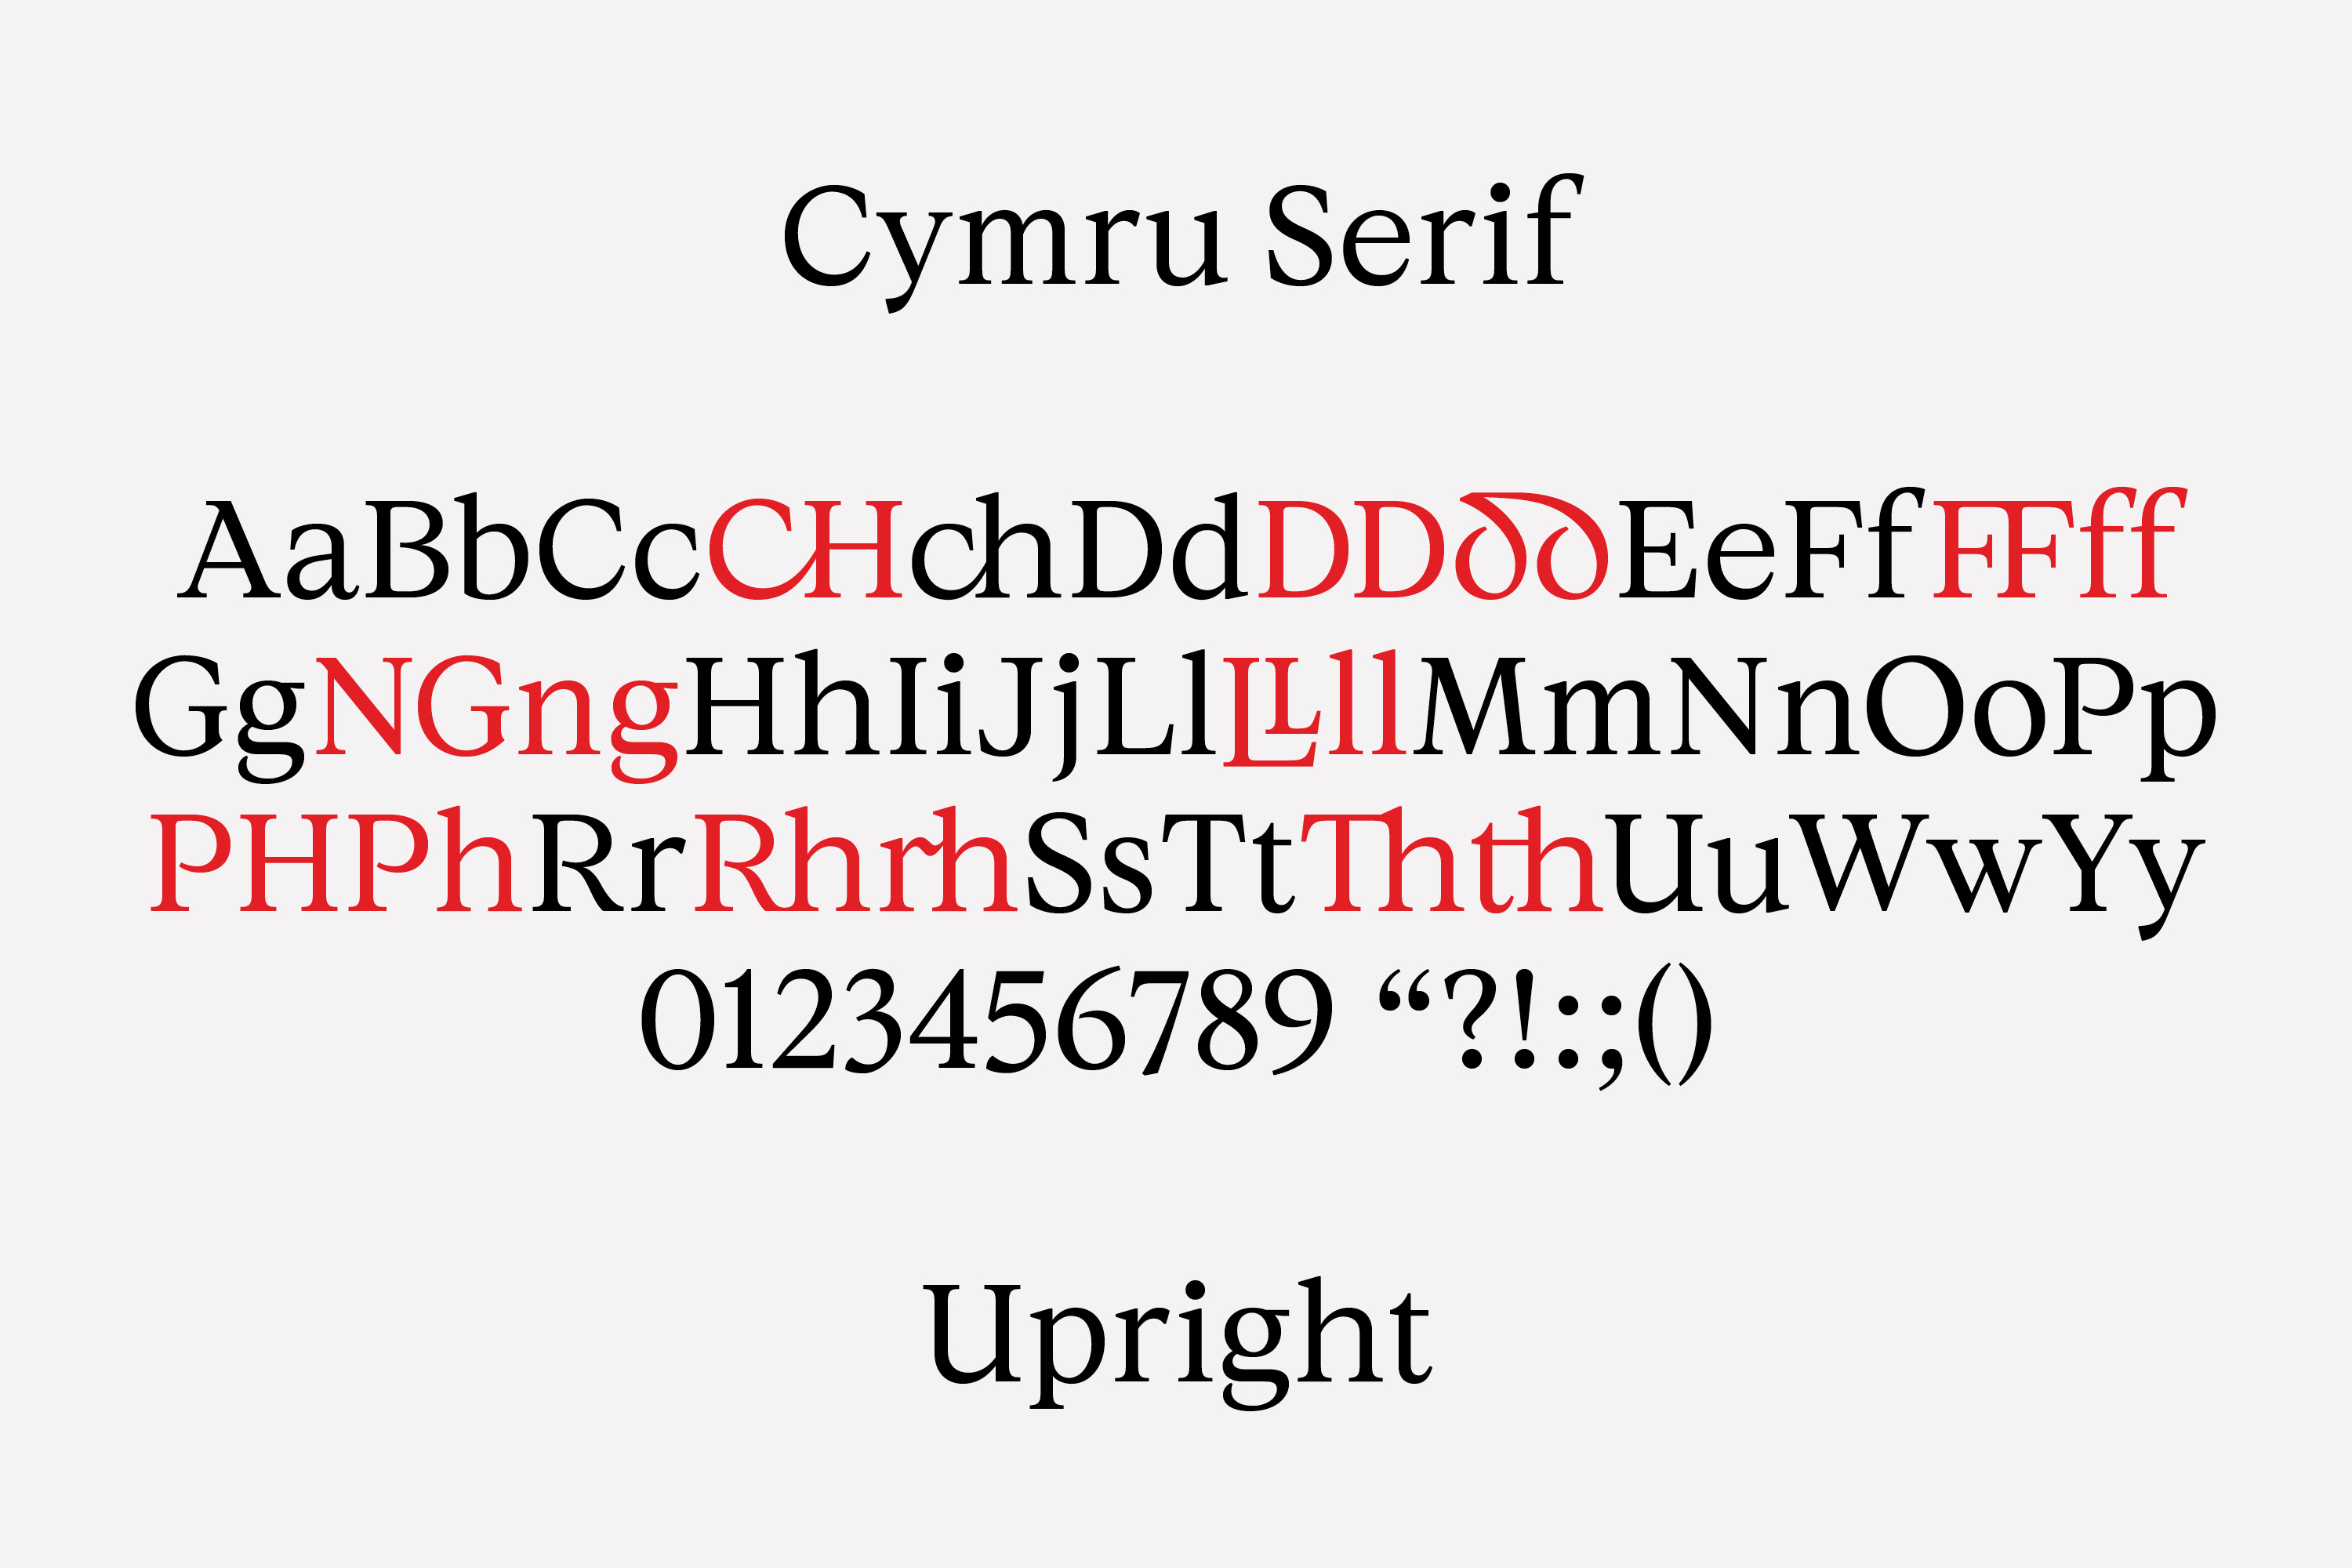 cymru serif upright